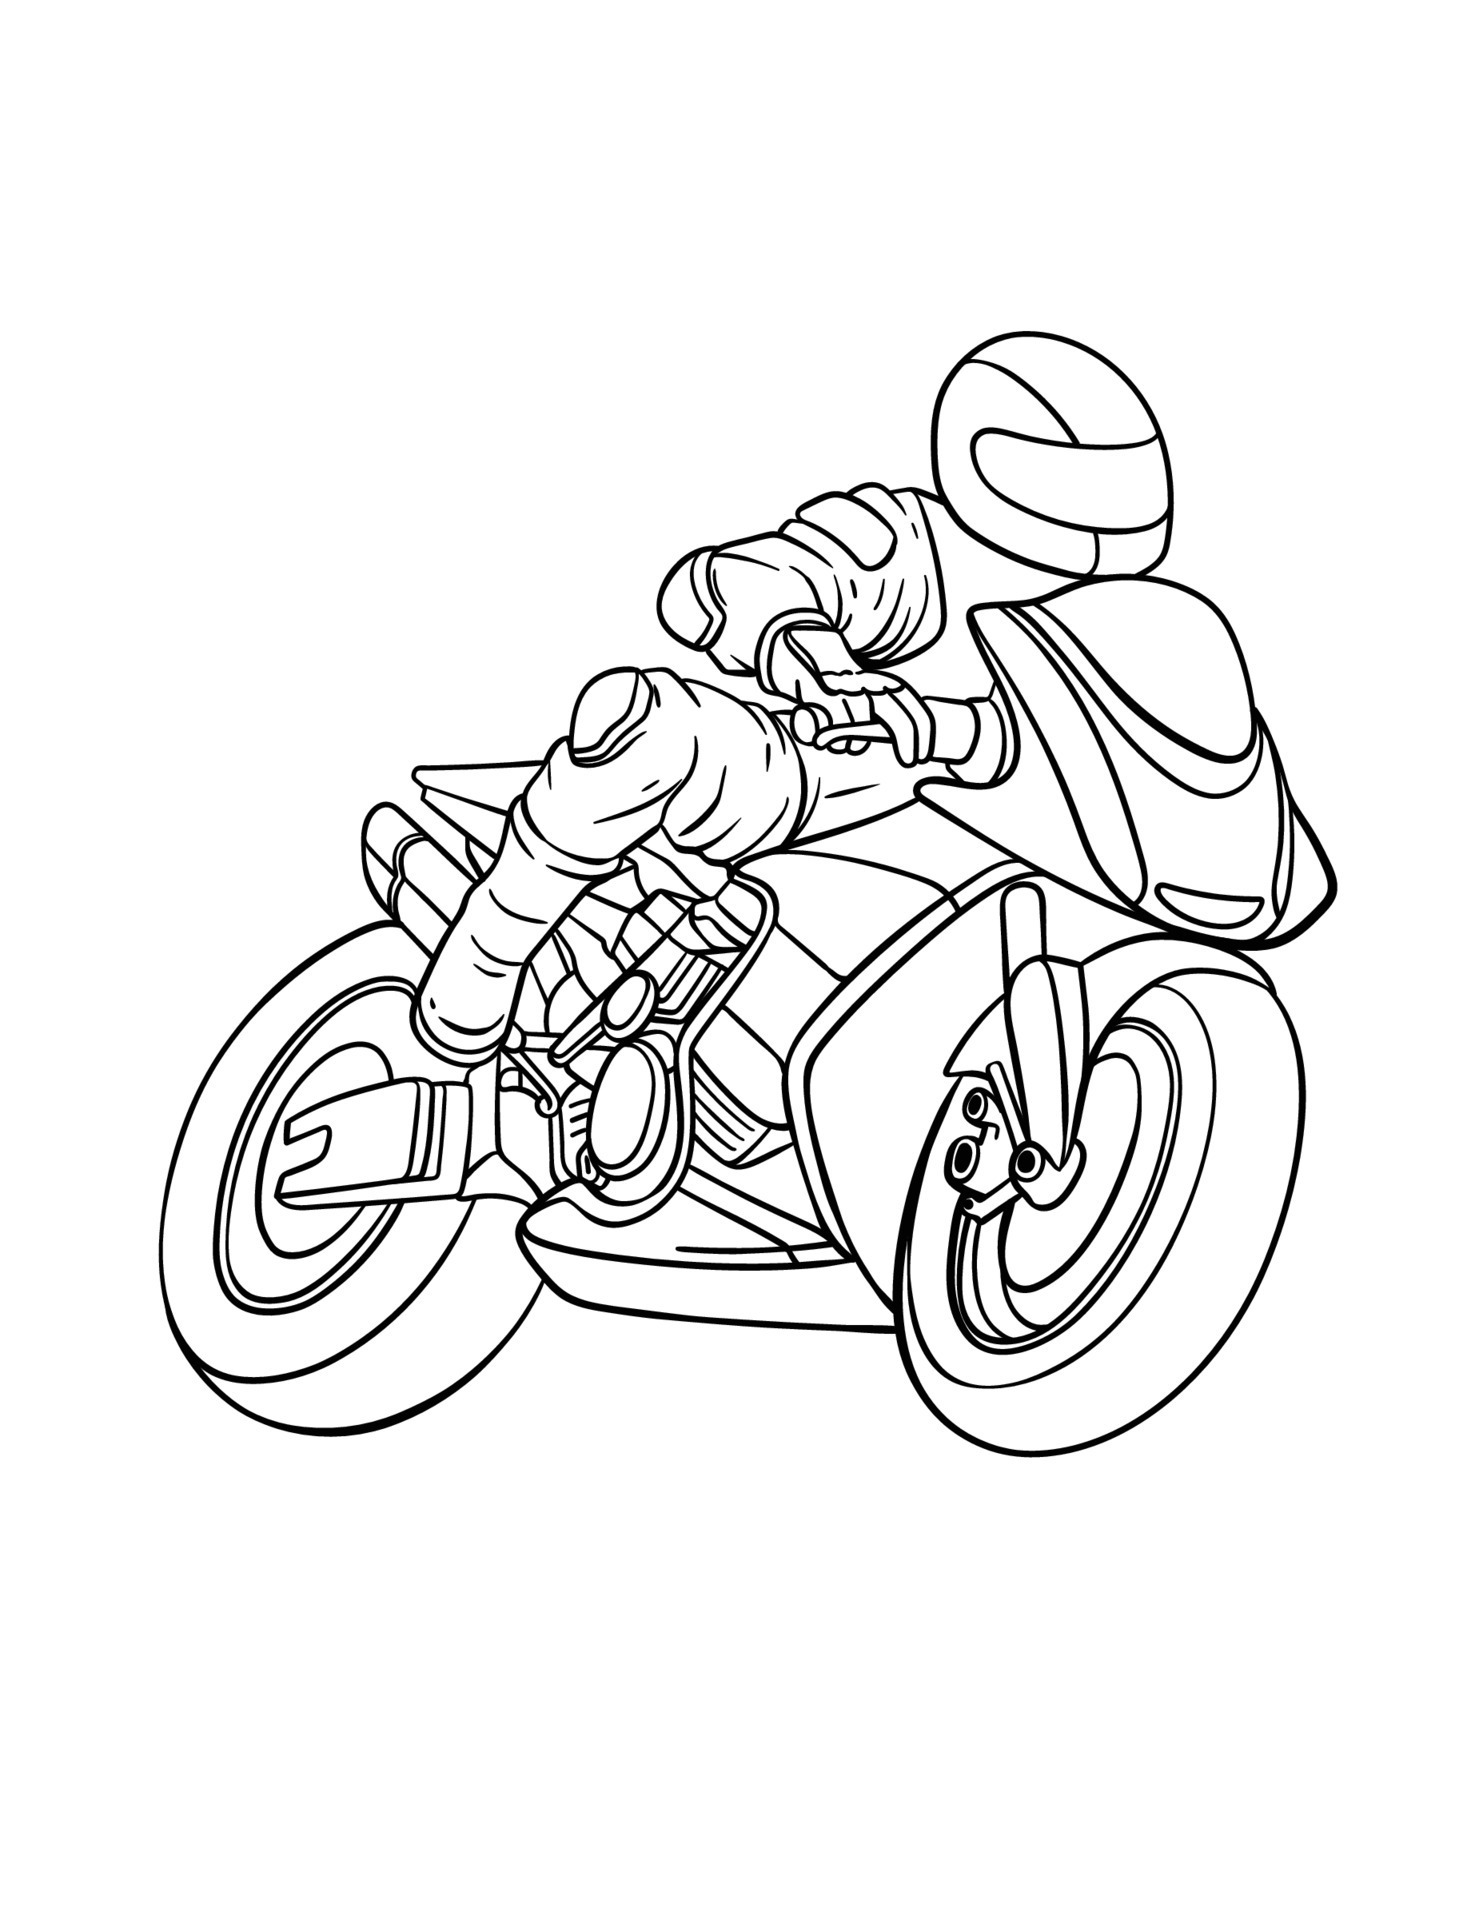 Desenhos para colorir de desenho de uma moto esportiva para colorir online  